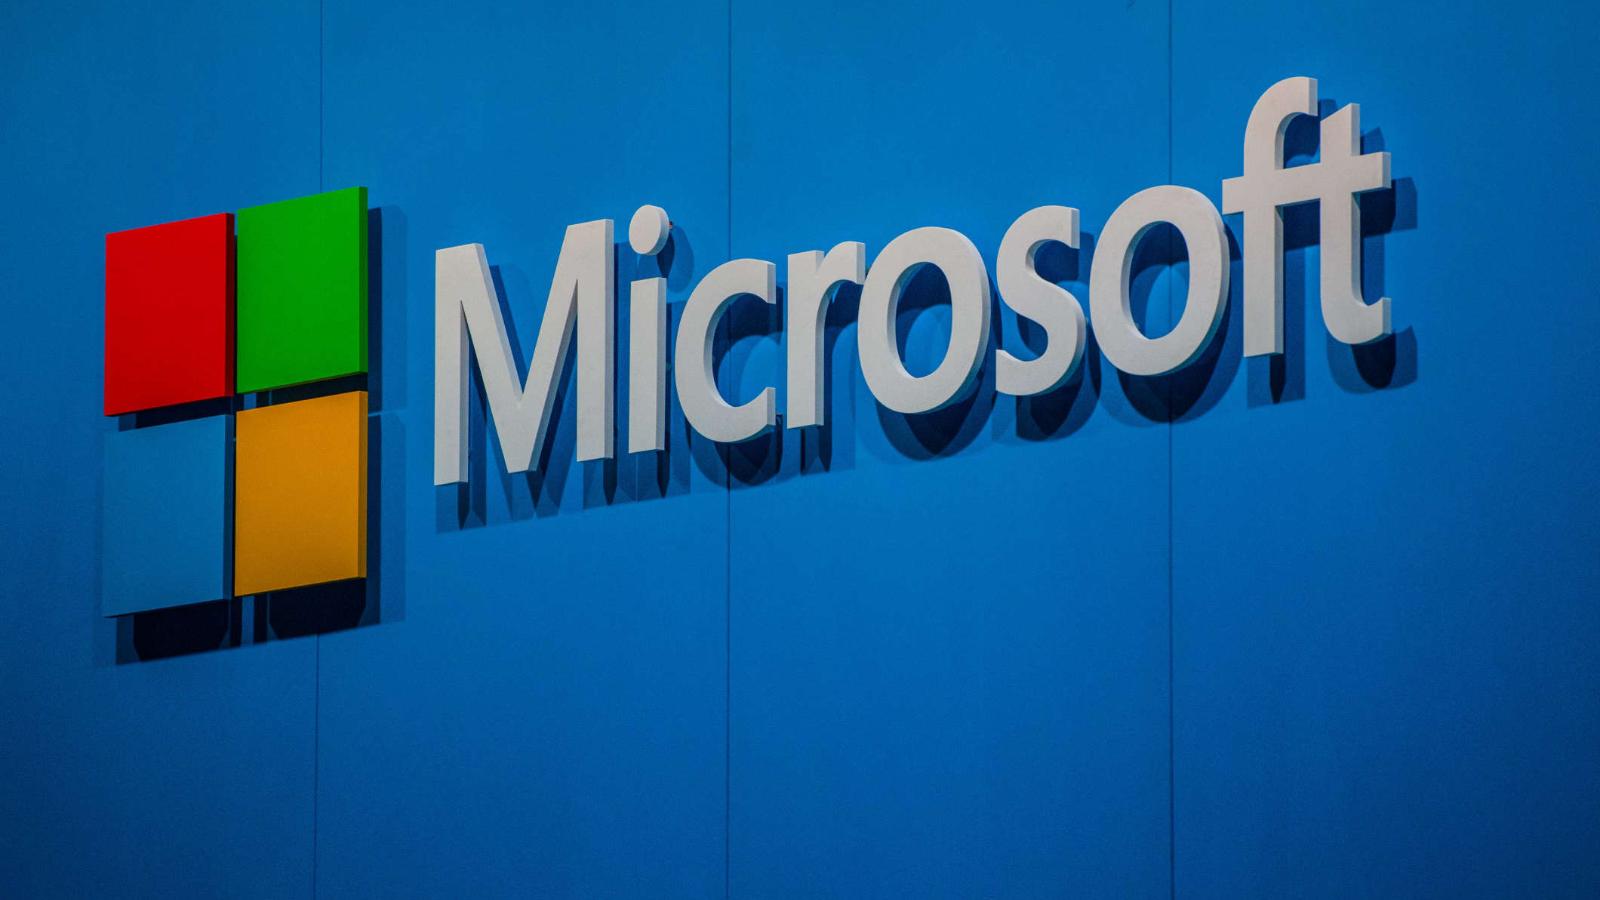 ¿Cómo ayudó la inteligencia artificial al aumento del valor de
Microsoft?